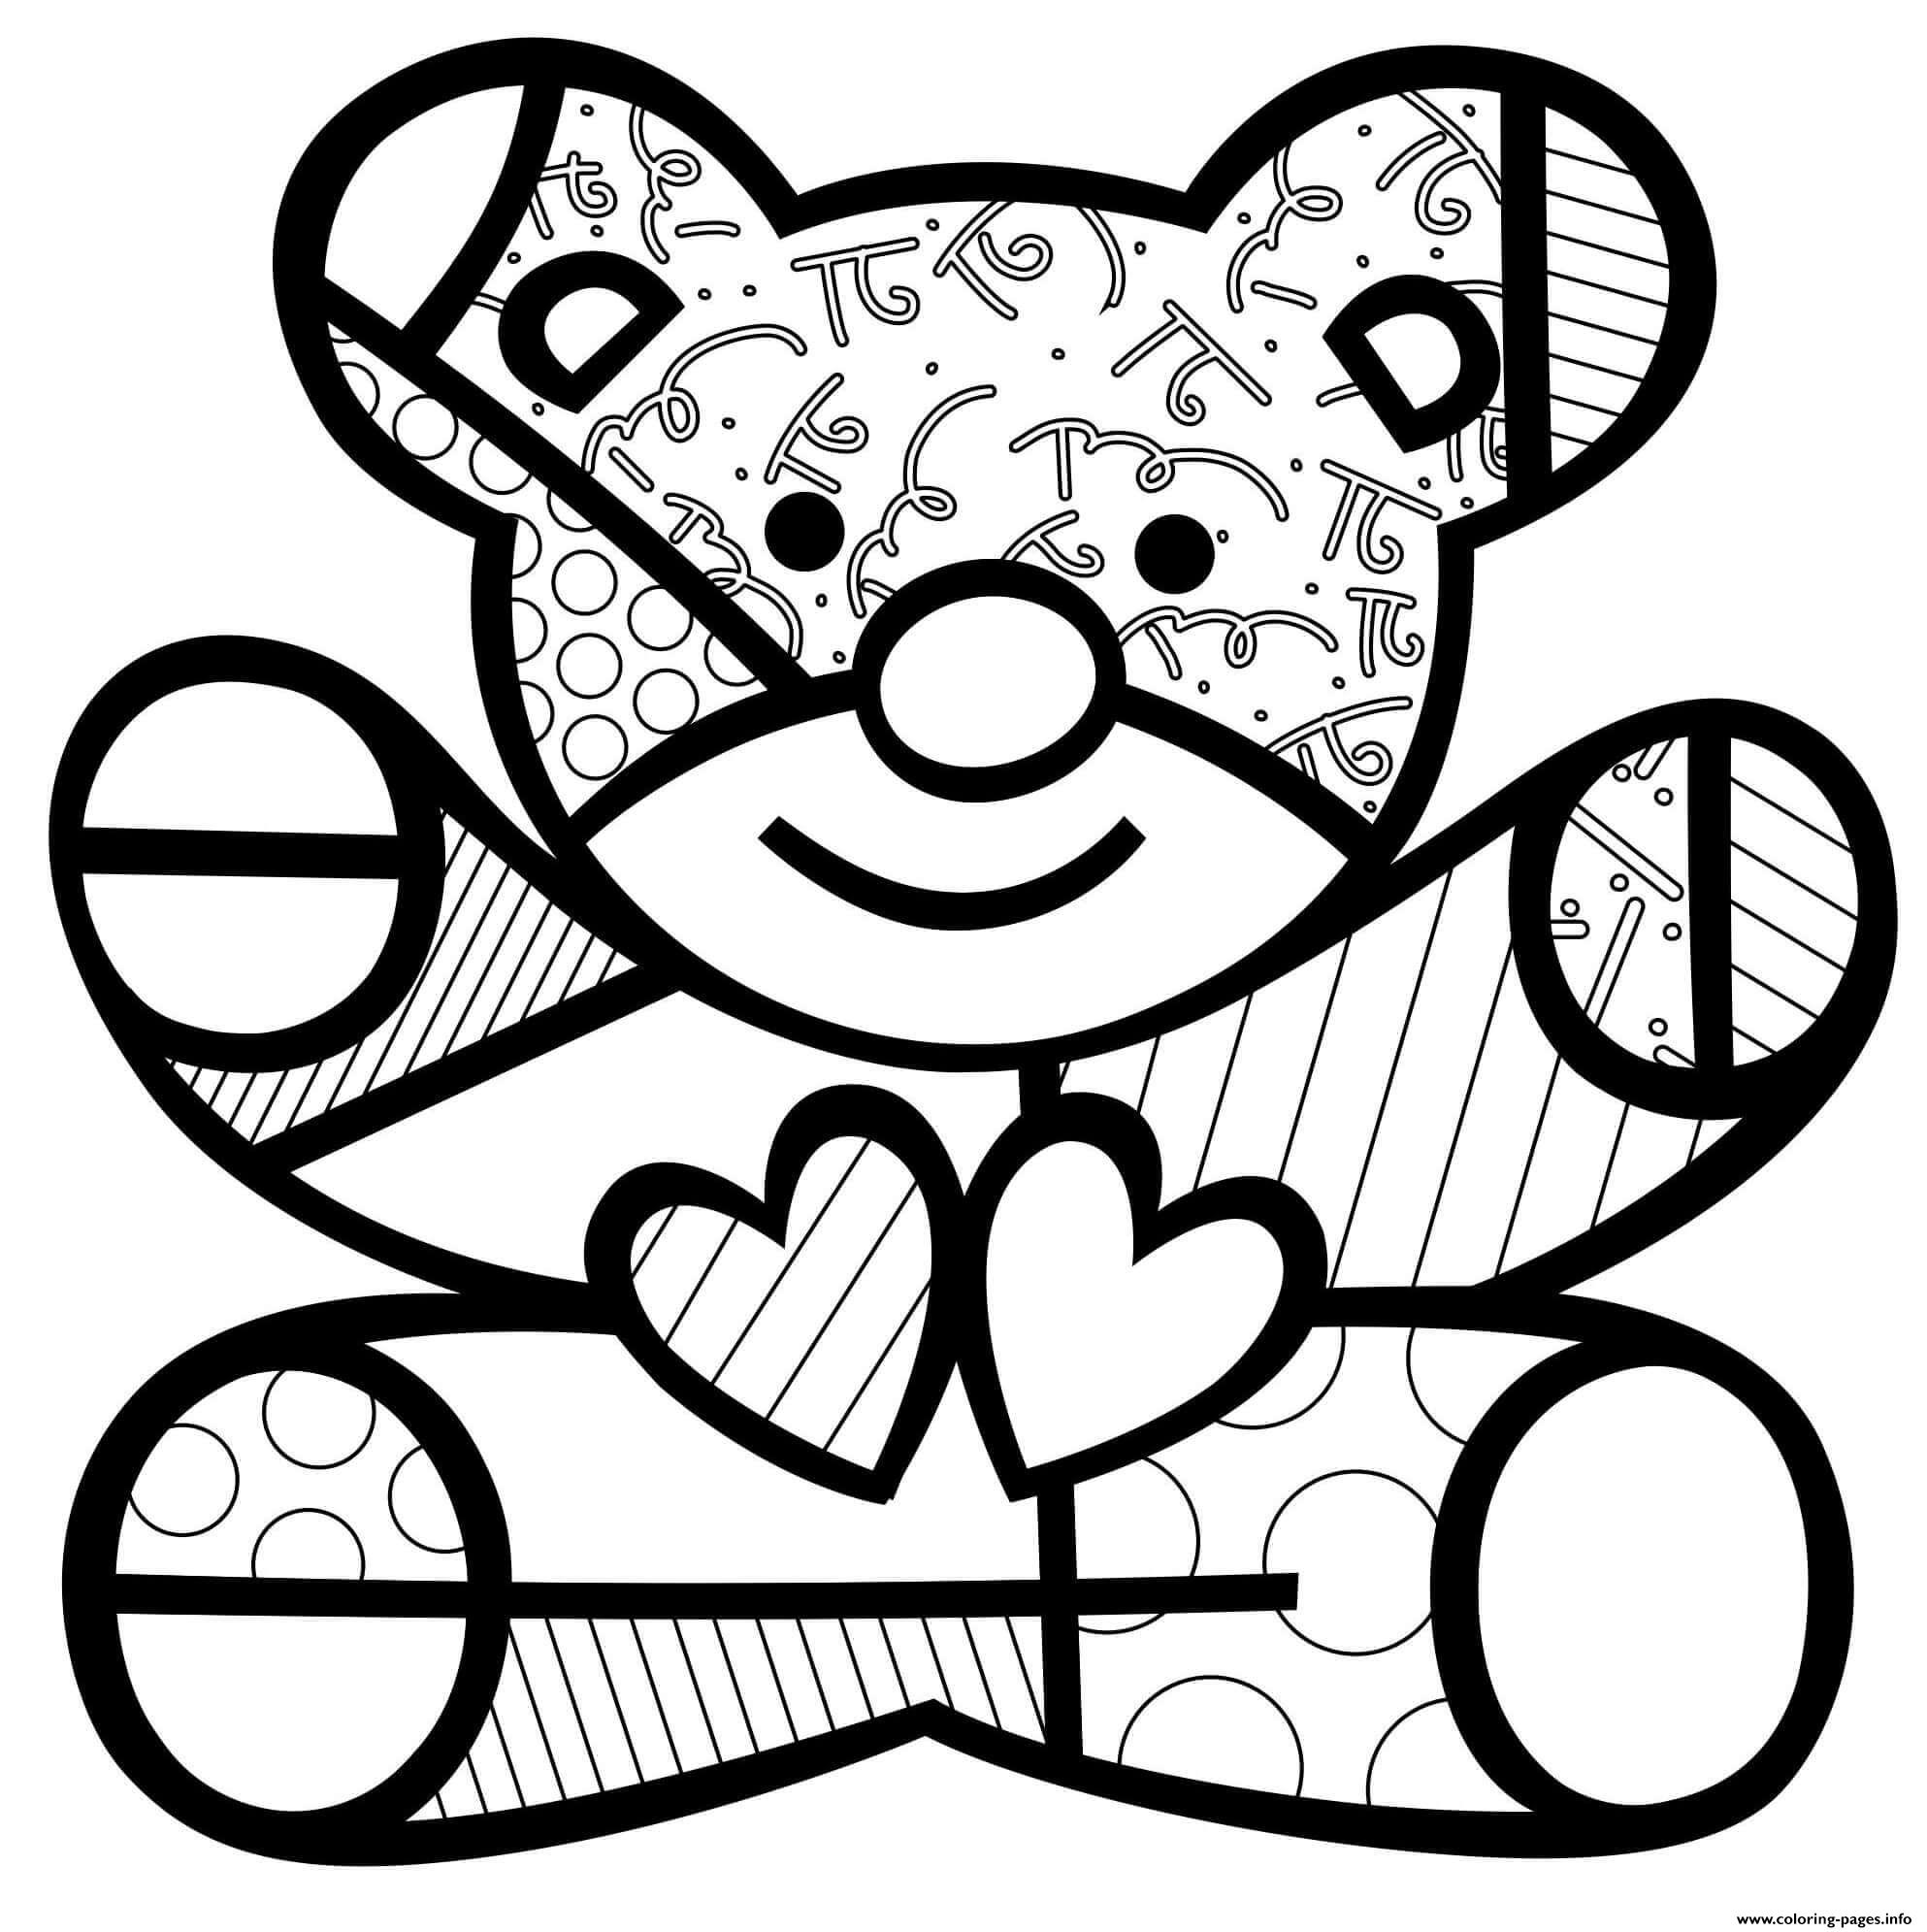 Teddy Bear Hearts By Romero Britto coloring